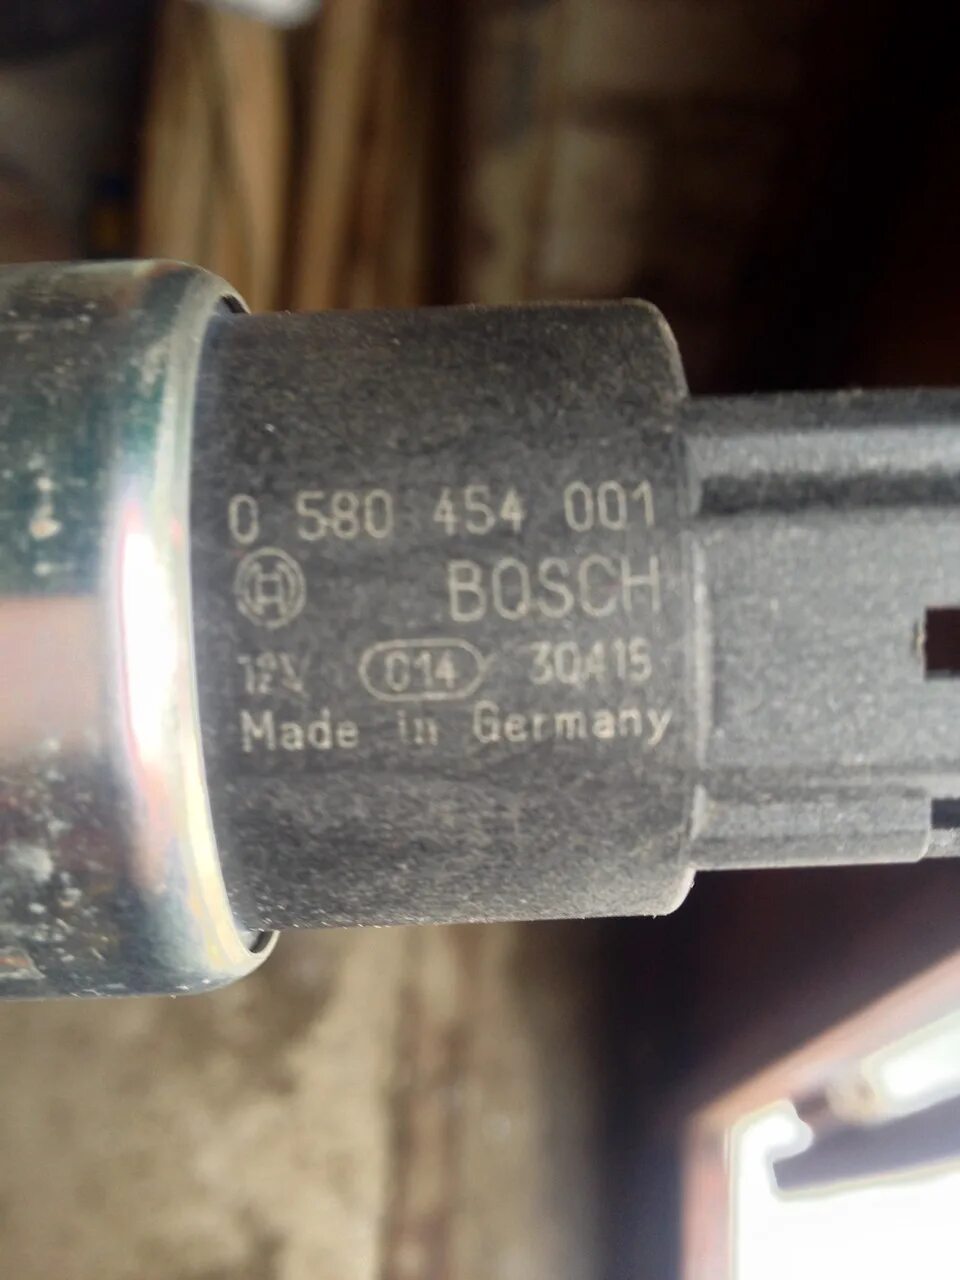 Bosch 0 580 454 001.